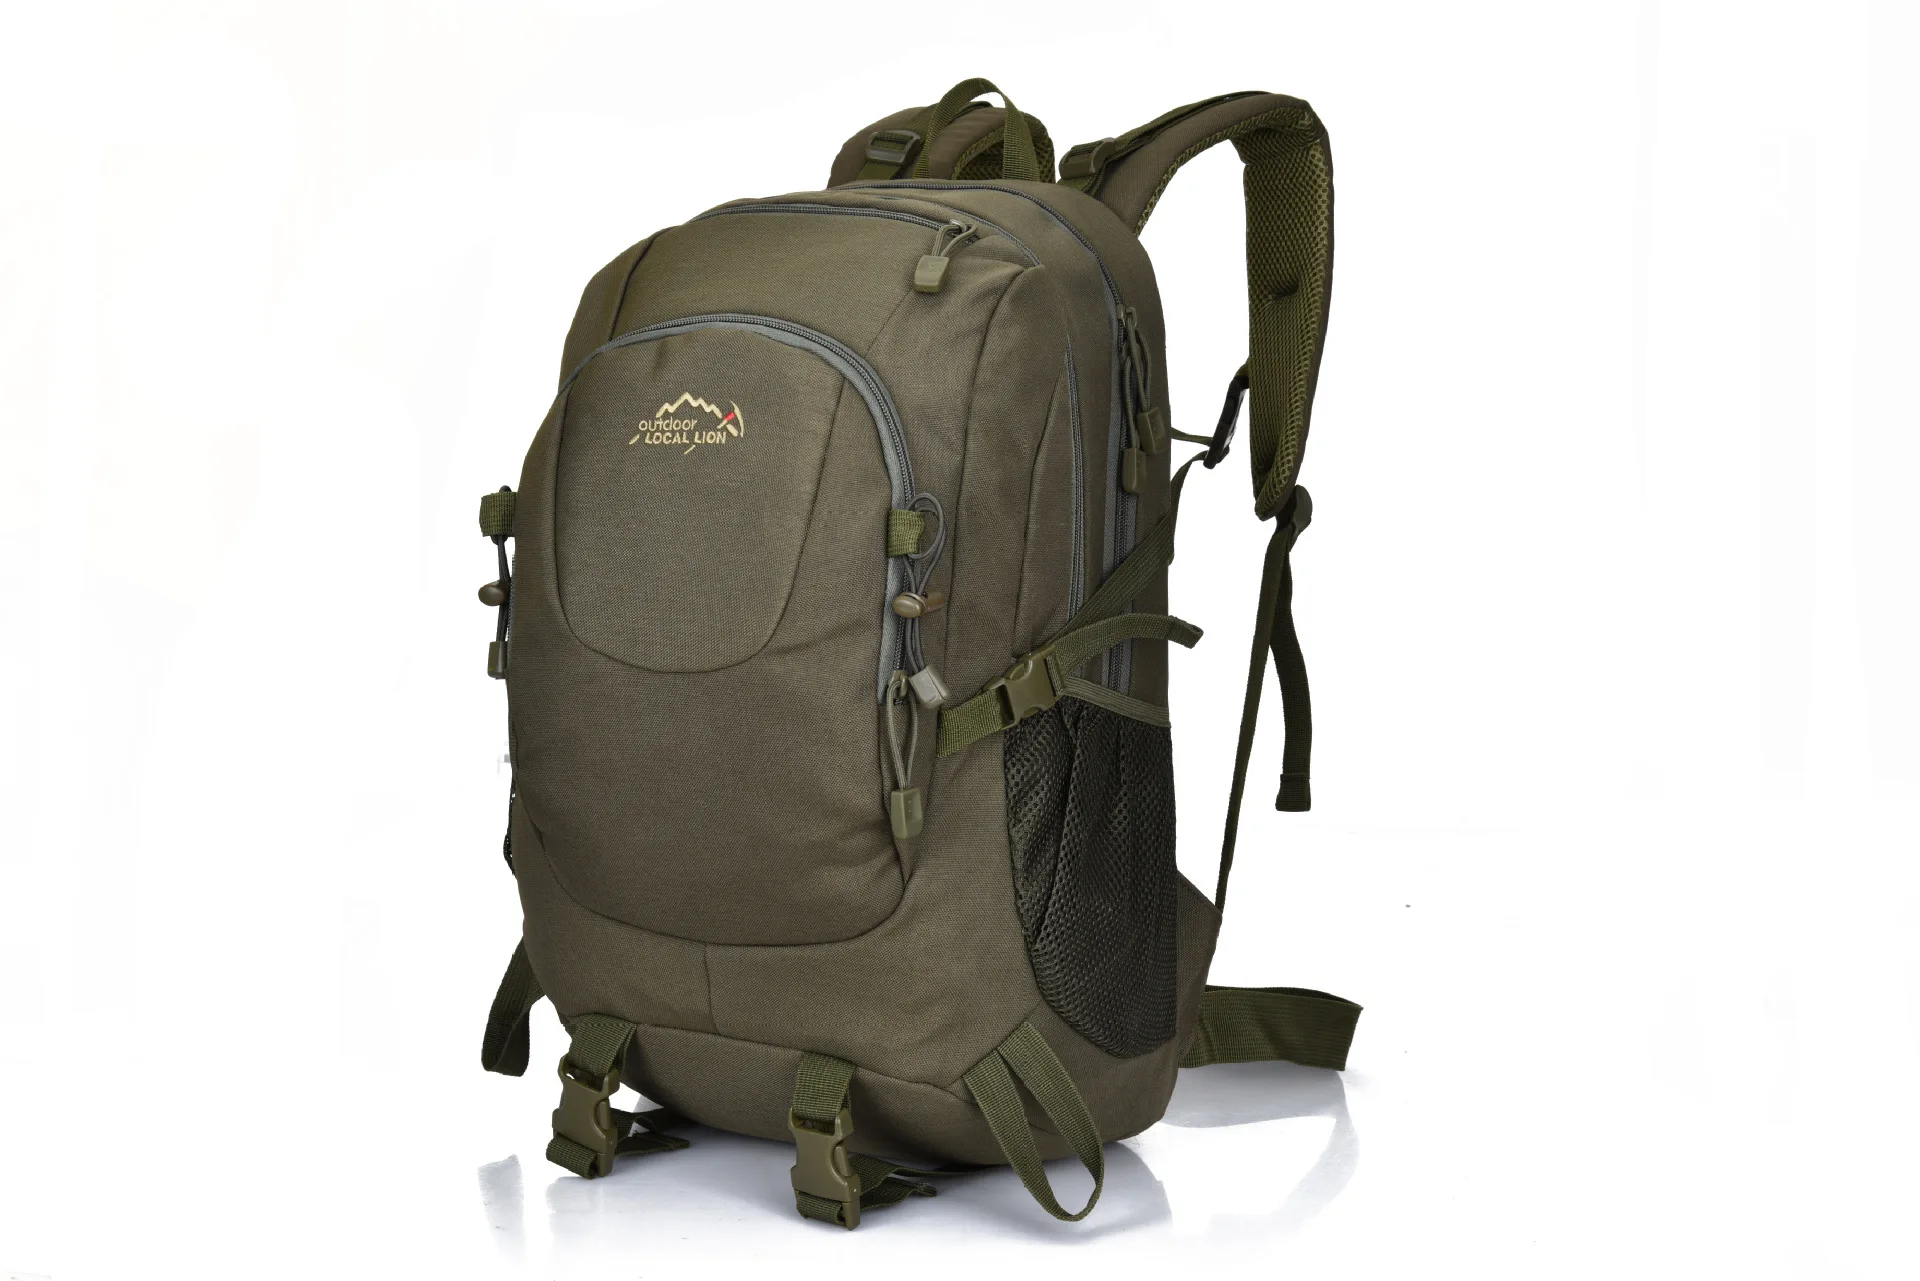 Напрямую от производителя продавая Местный лев стиль открытый альпинистский мешок большой емкости рюкзак для походов на природу Пешие прогулки назад